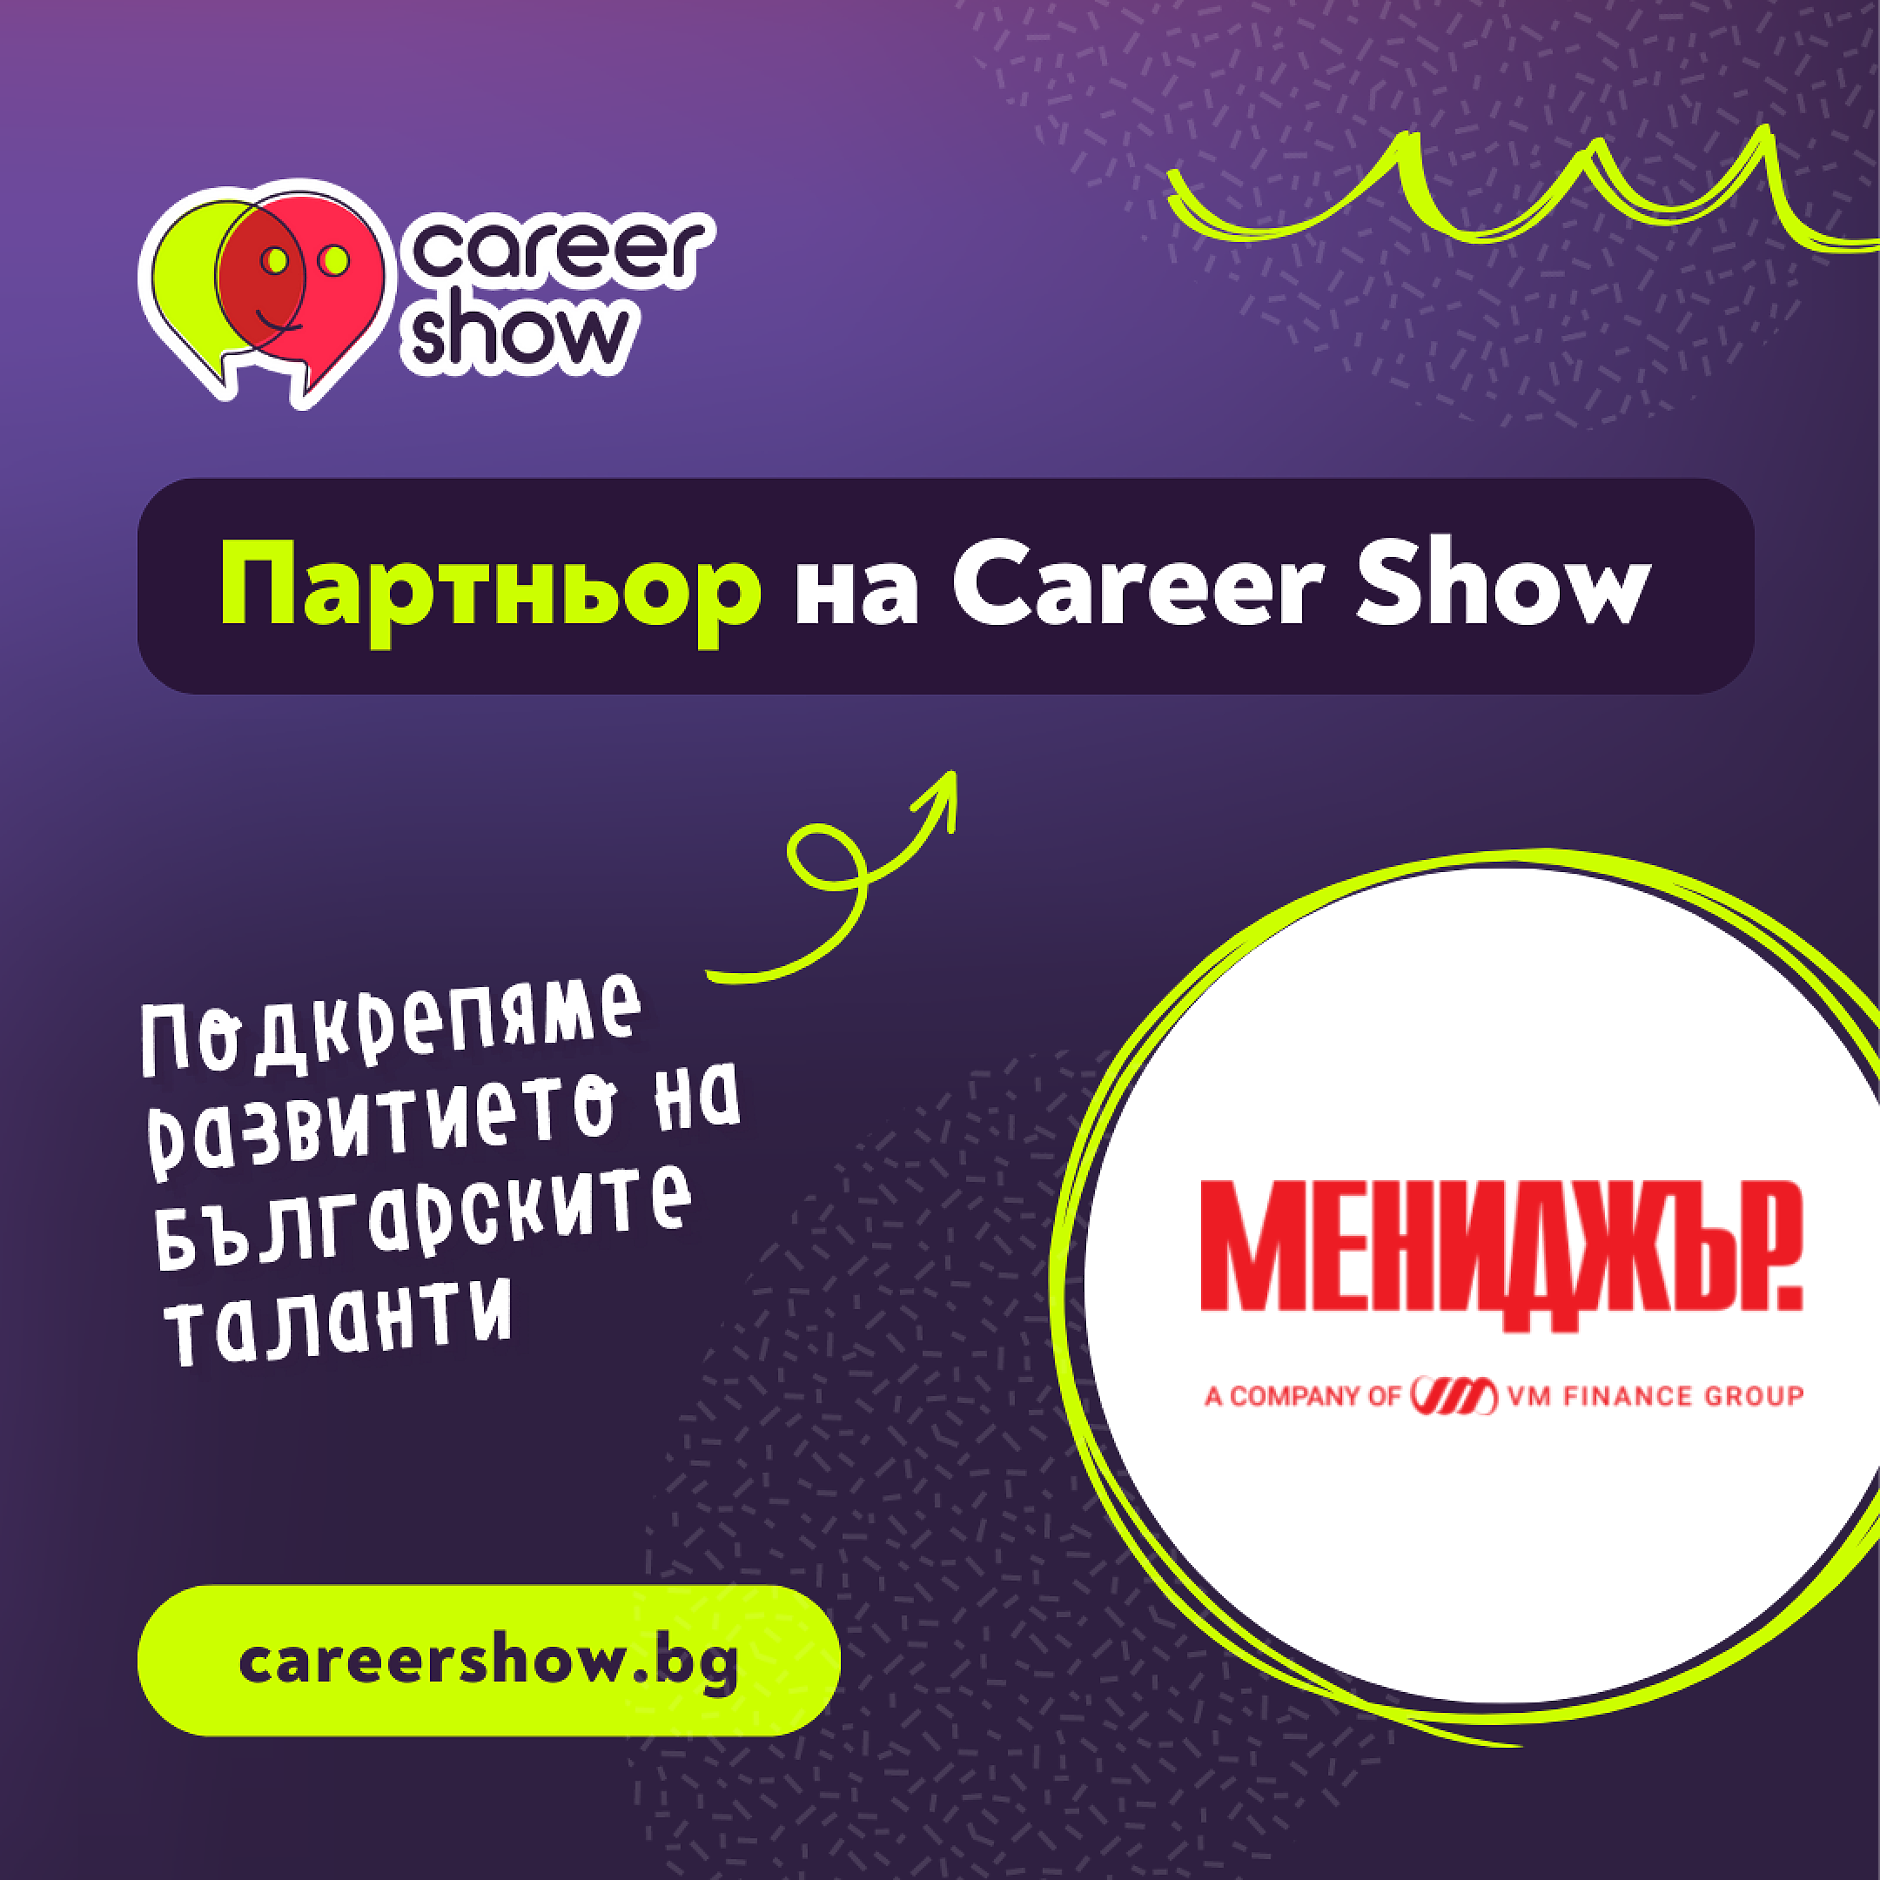 МЕНИДЖЪР МЕДИЯ ГРУП подкрепя мисията на Career Show да свързва бизнеса и българските таланти